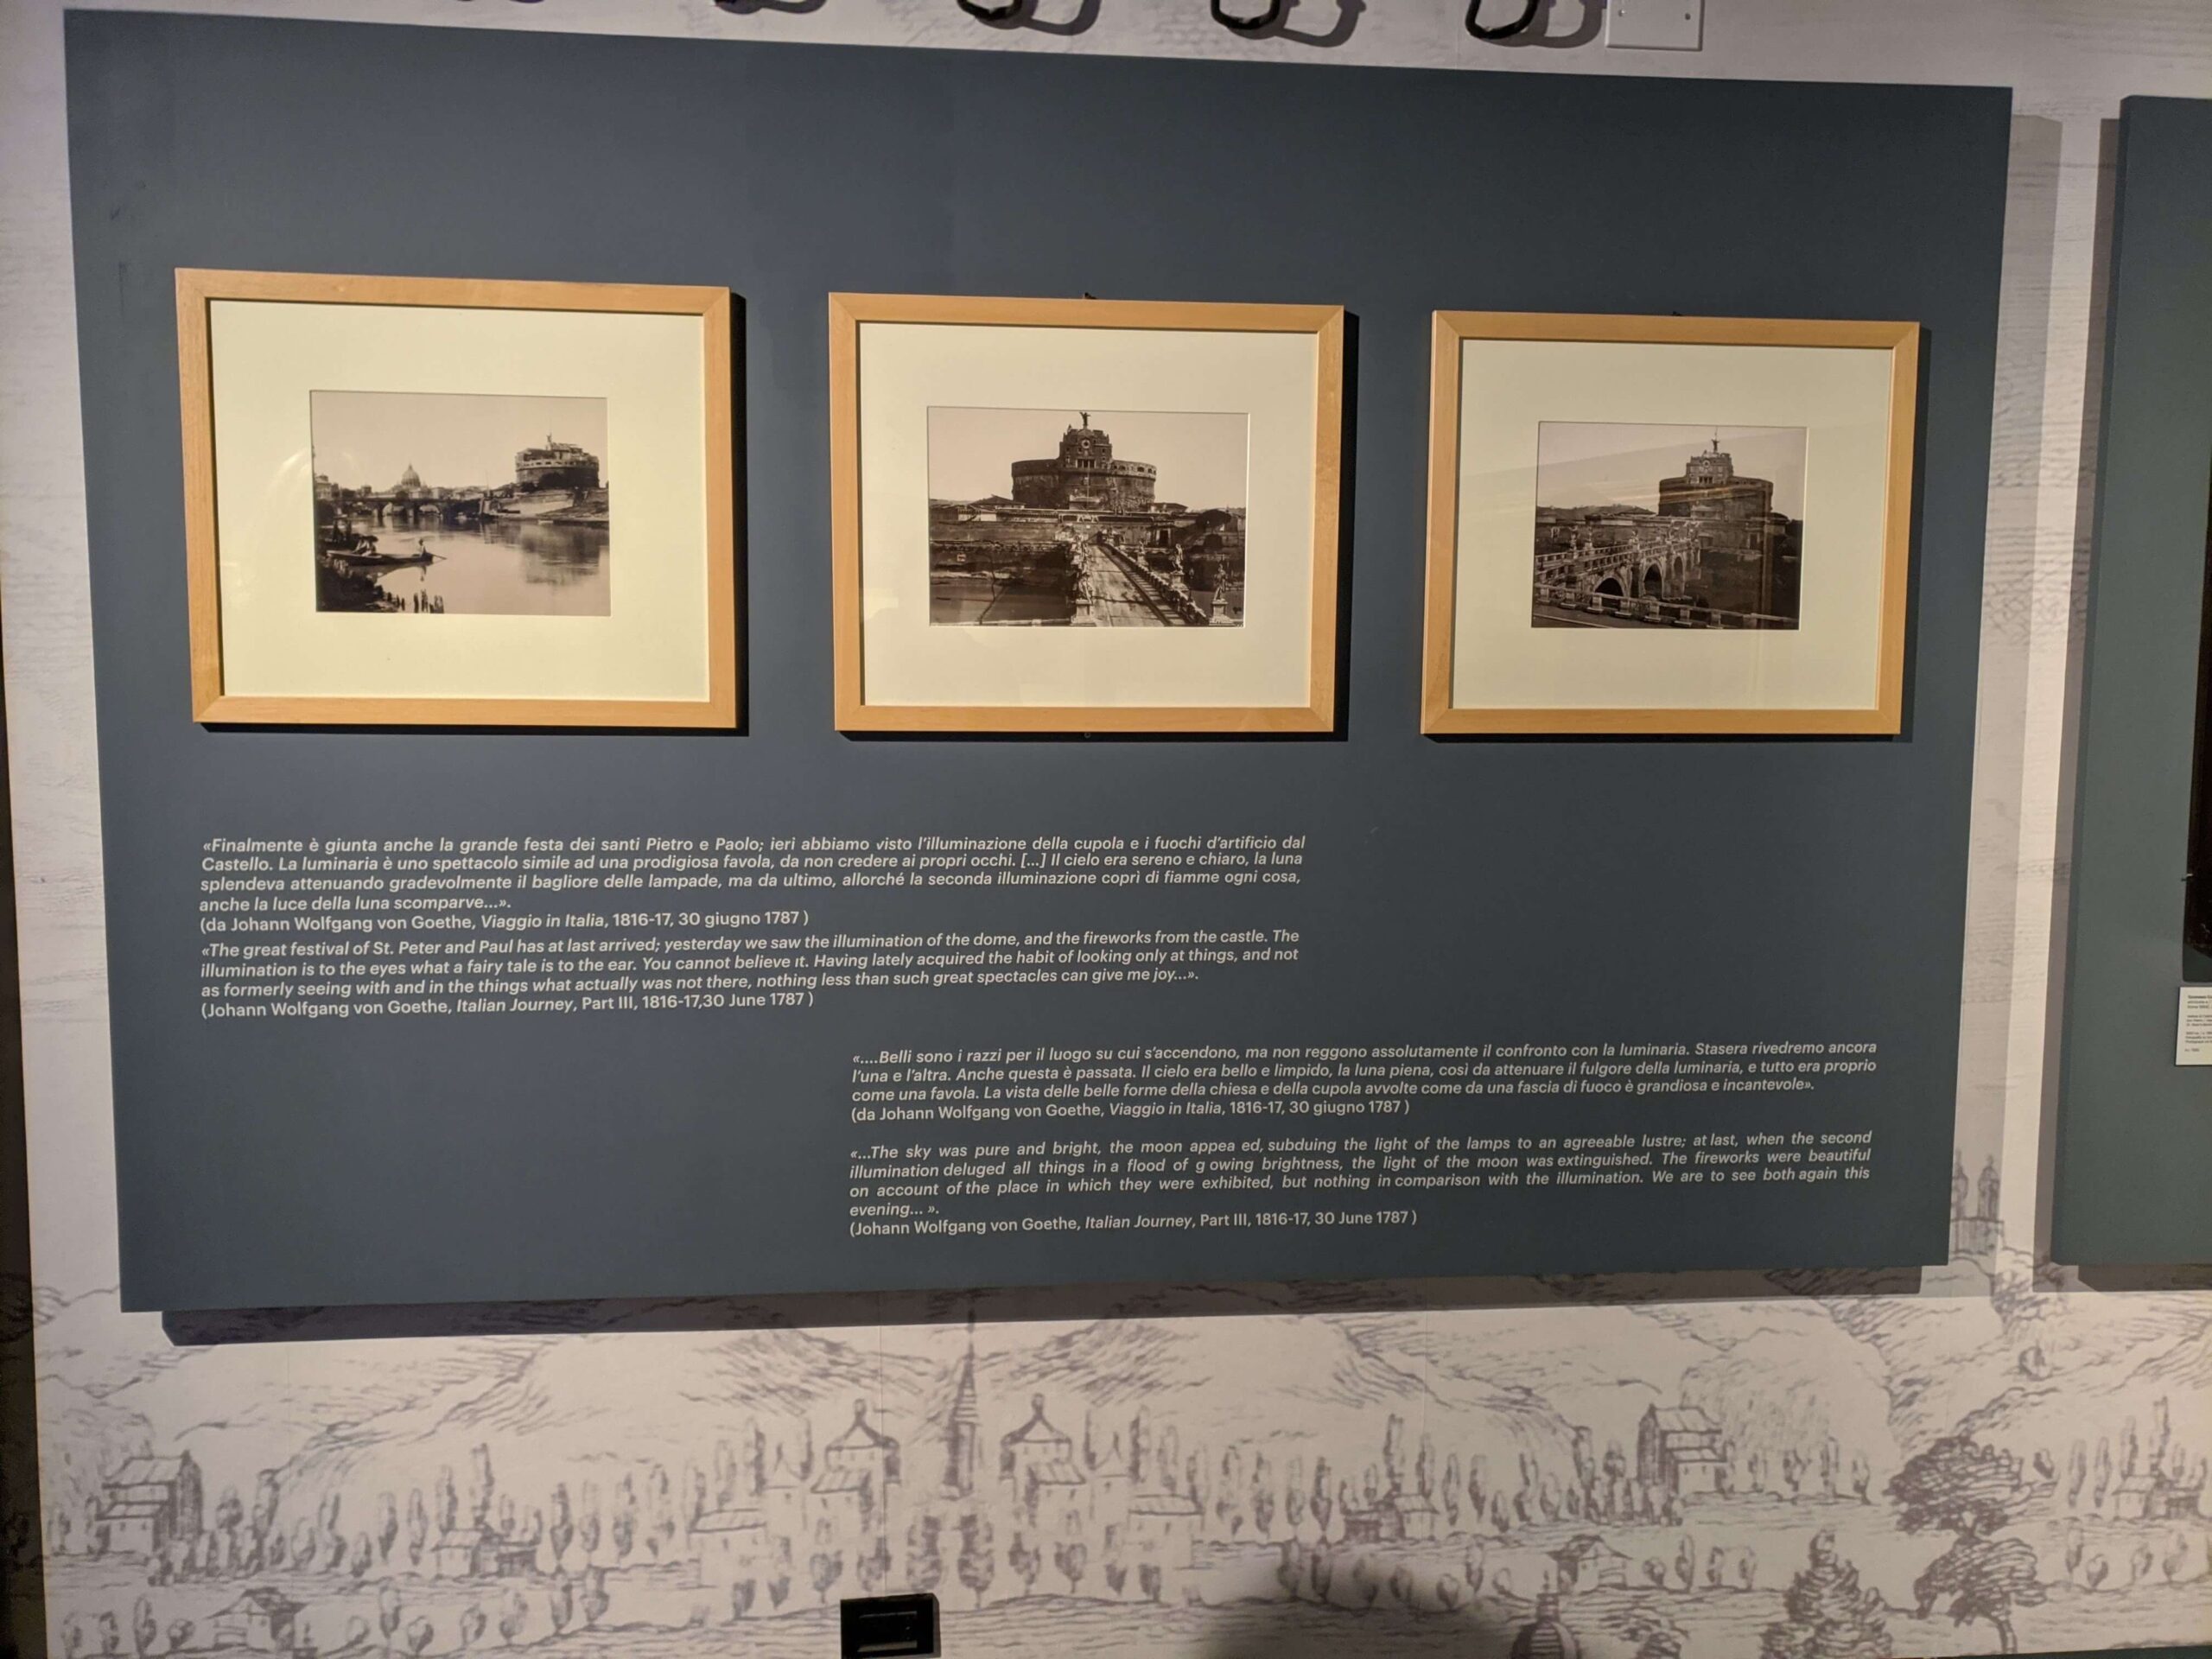 Três fotografias antigas do Castel Sant'Angelo emolduradas e penduradas na parede de um museu, abaixo de um texto explicativo em italiano e alemão.